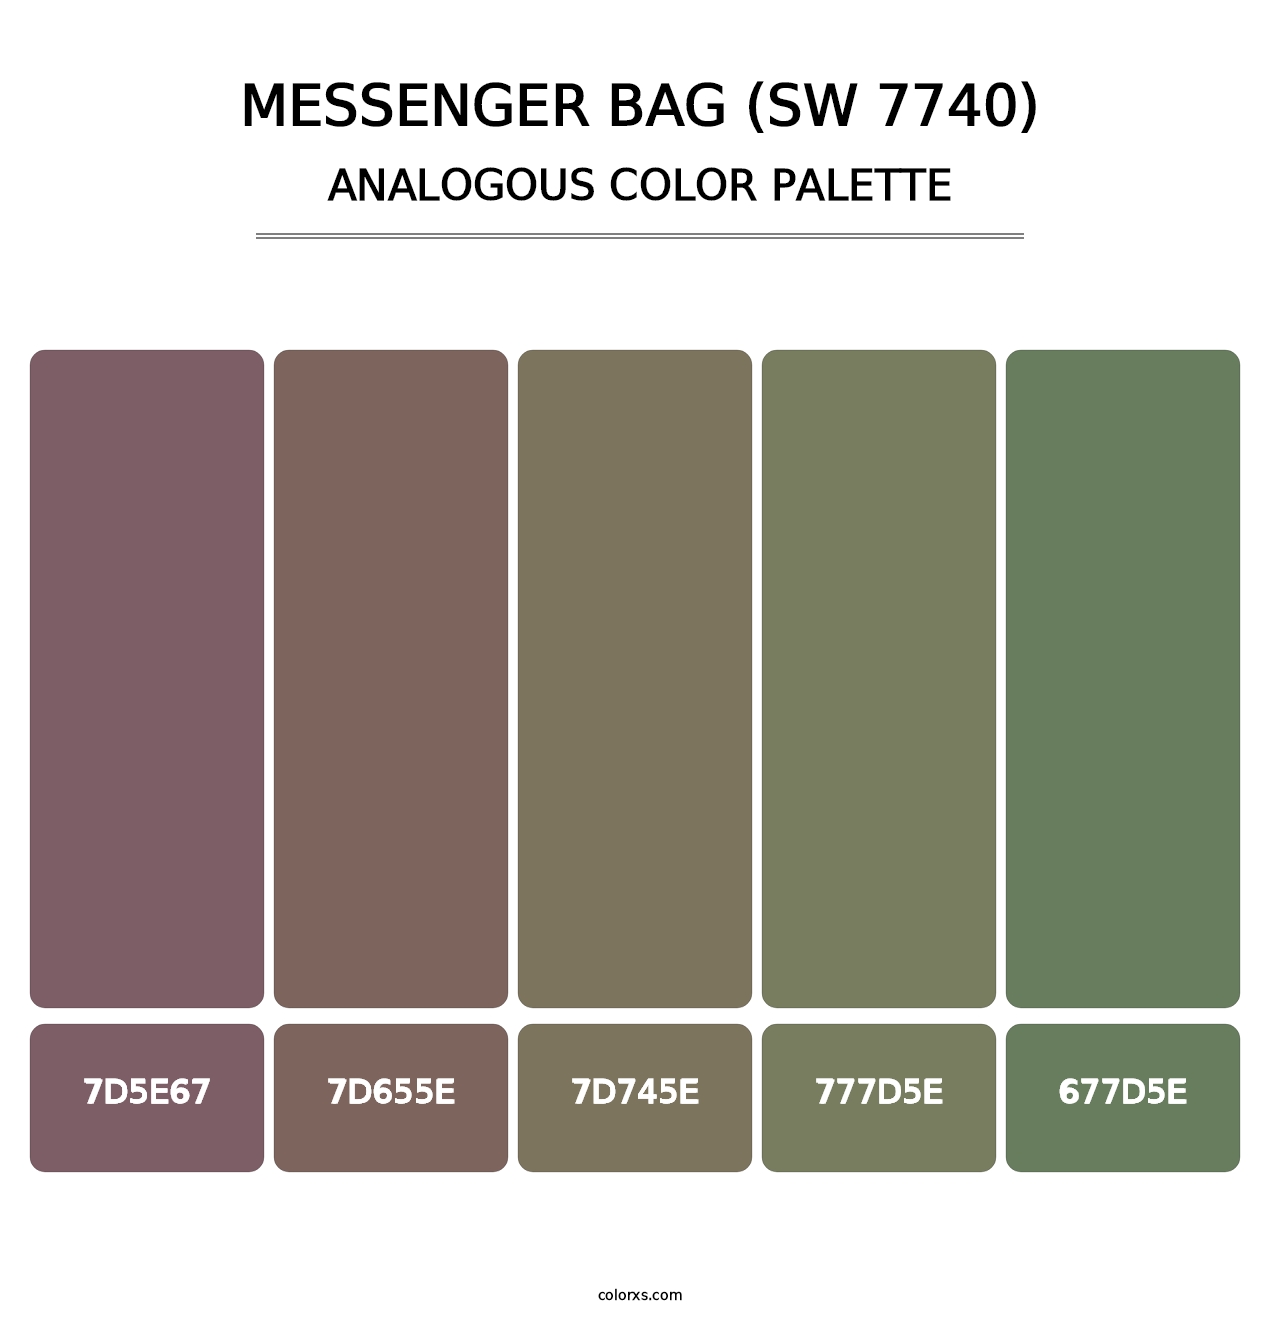 Messenger Bag (SW 7740) - Analogous Color Palette